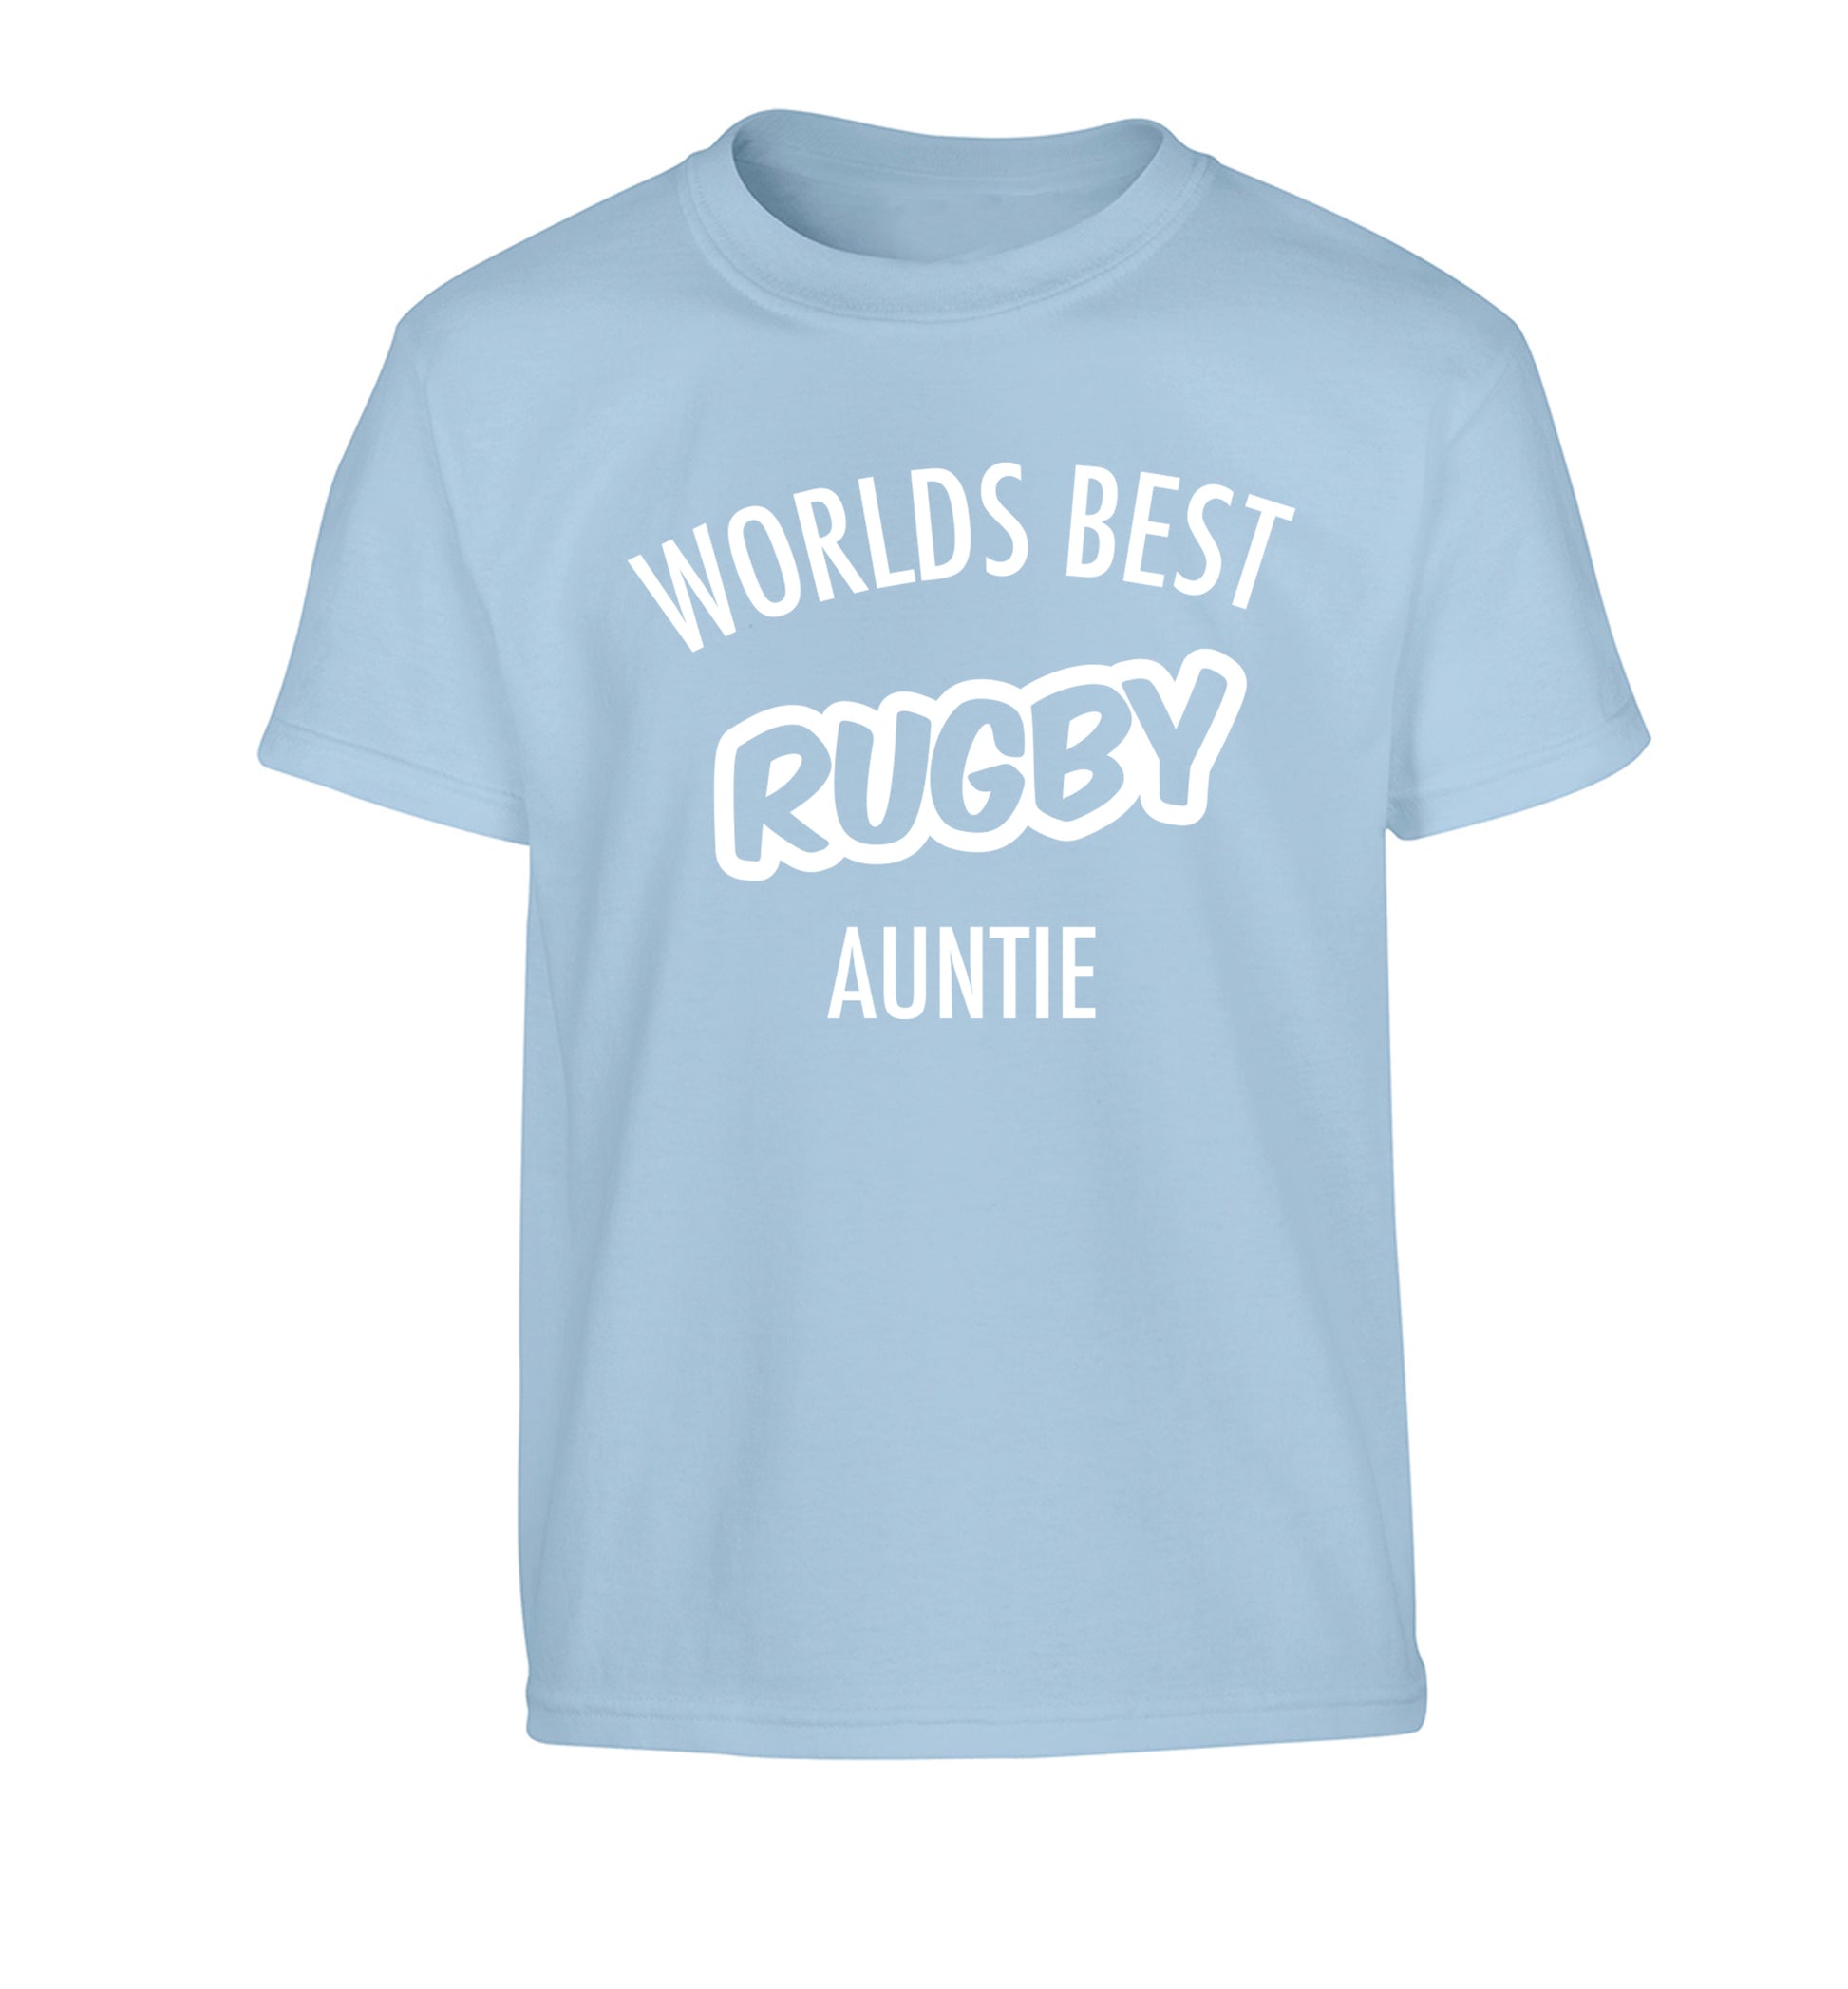 Worlds best rugby auntie Children's light blue Tshirt 12-13 Years